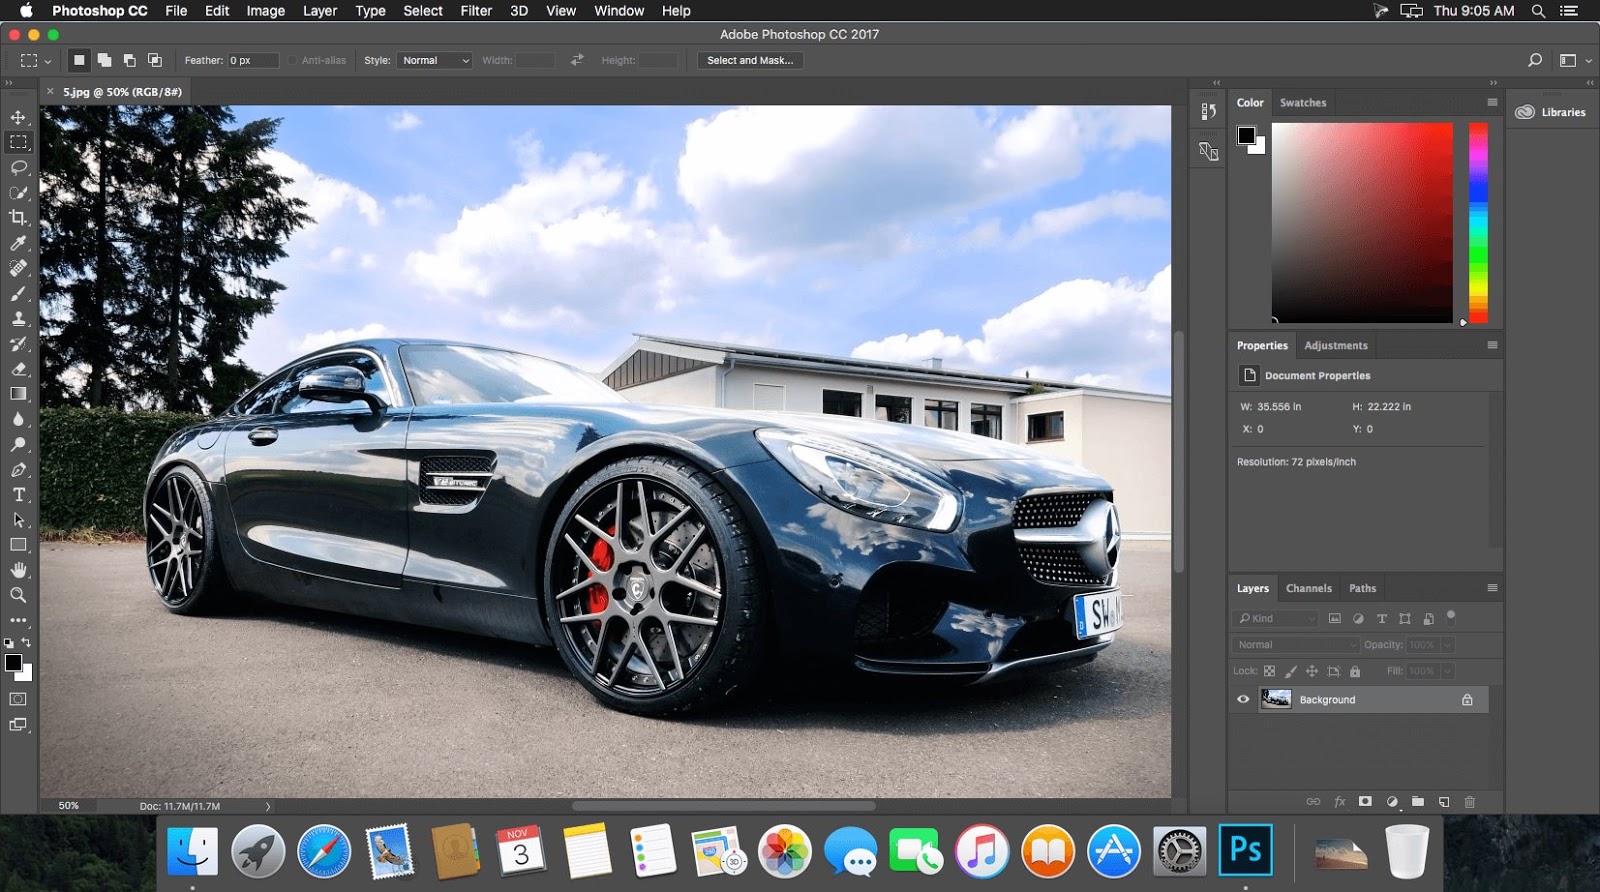 adobe photoshop cc for mac 2015